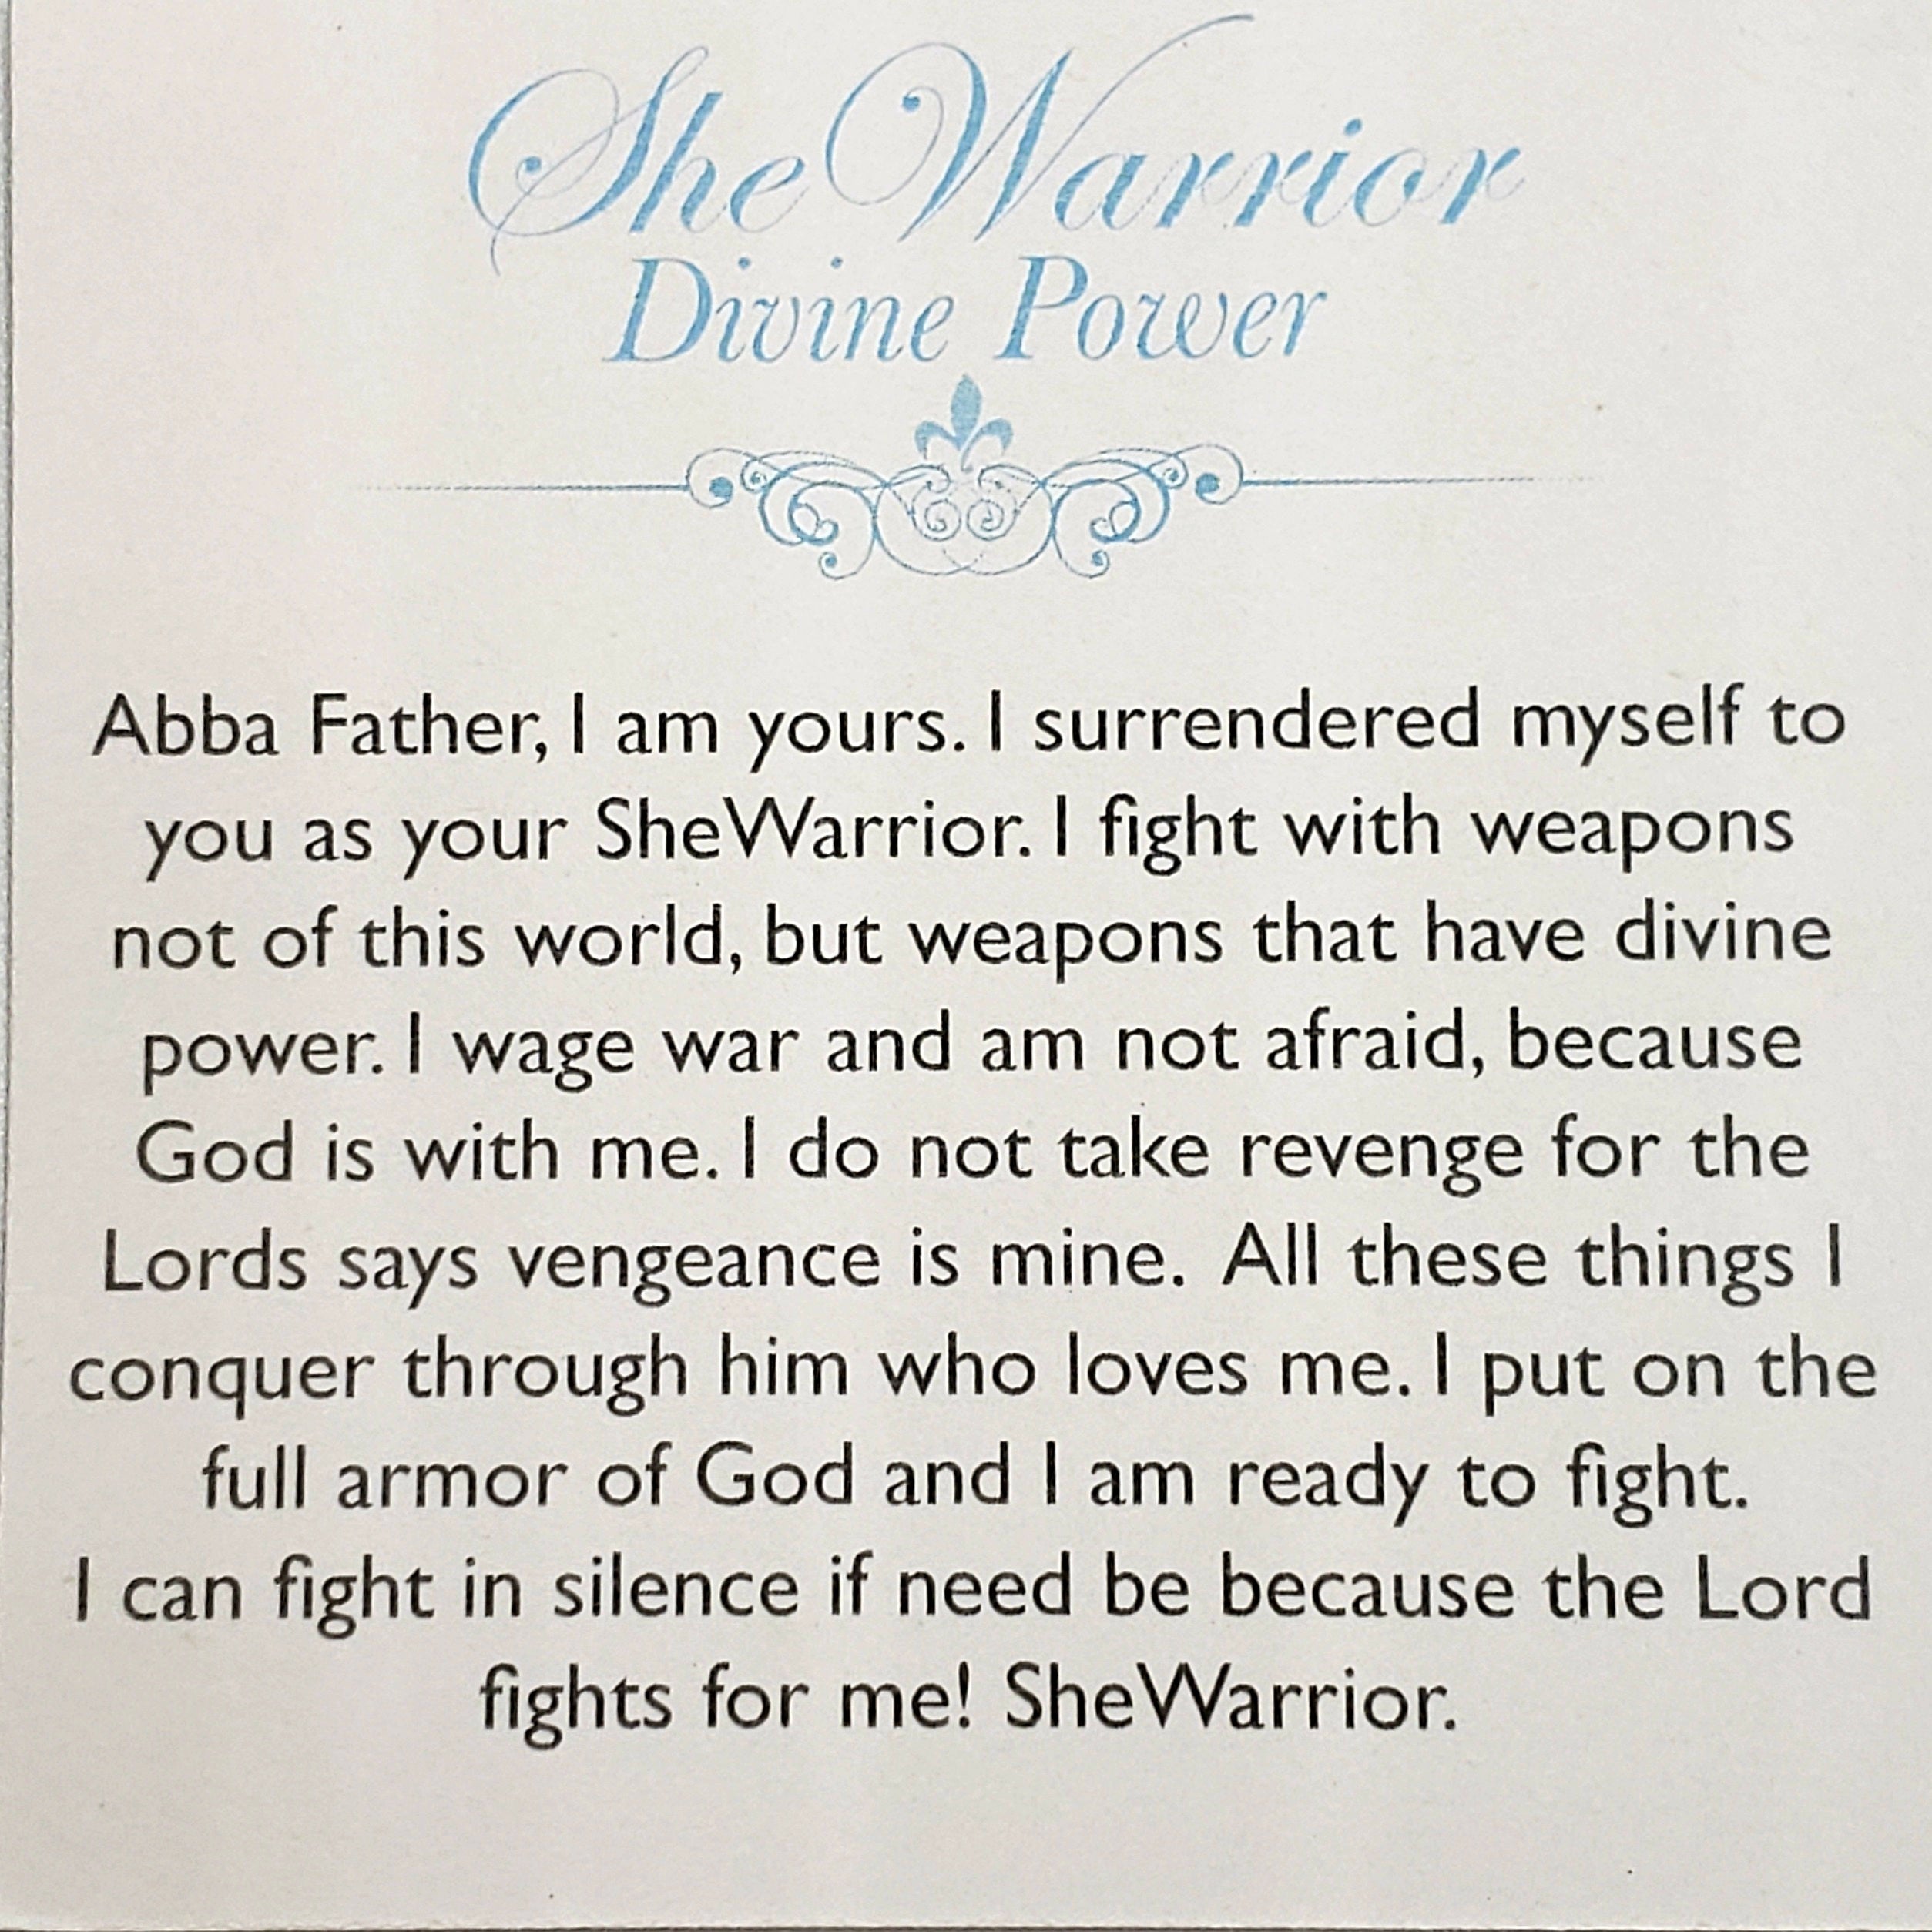 She Warrior Divine Power Bracelet